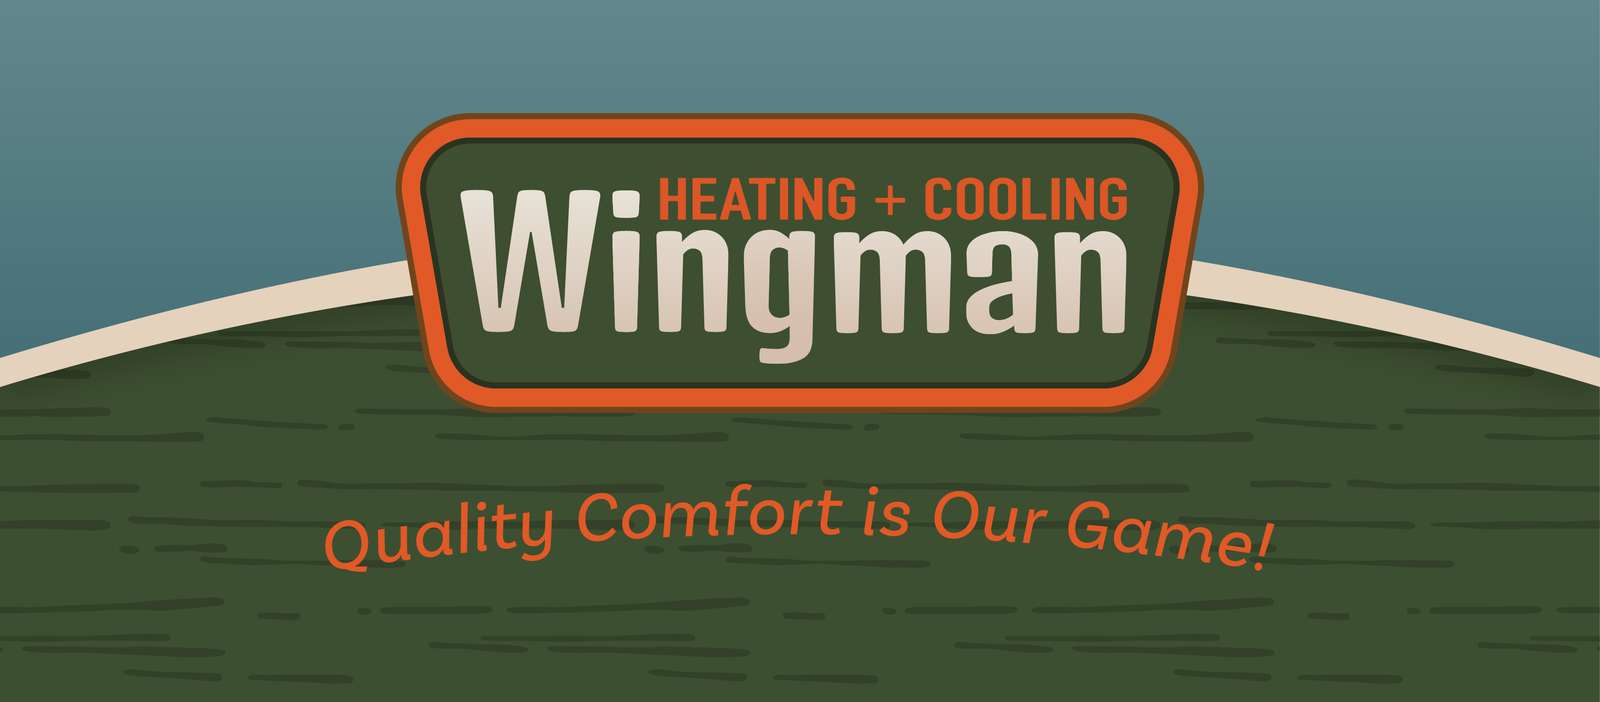 Aquecimento e resfriamento Wingman puzzle online a partir de fotografia